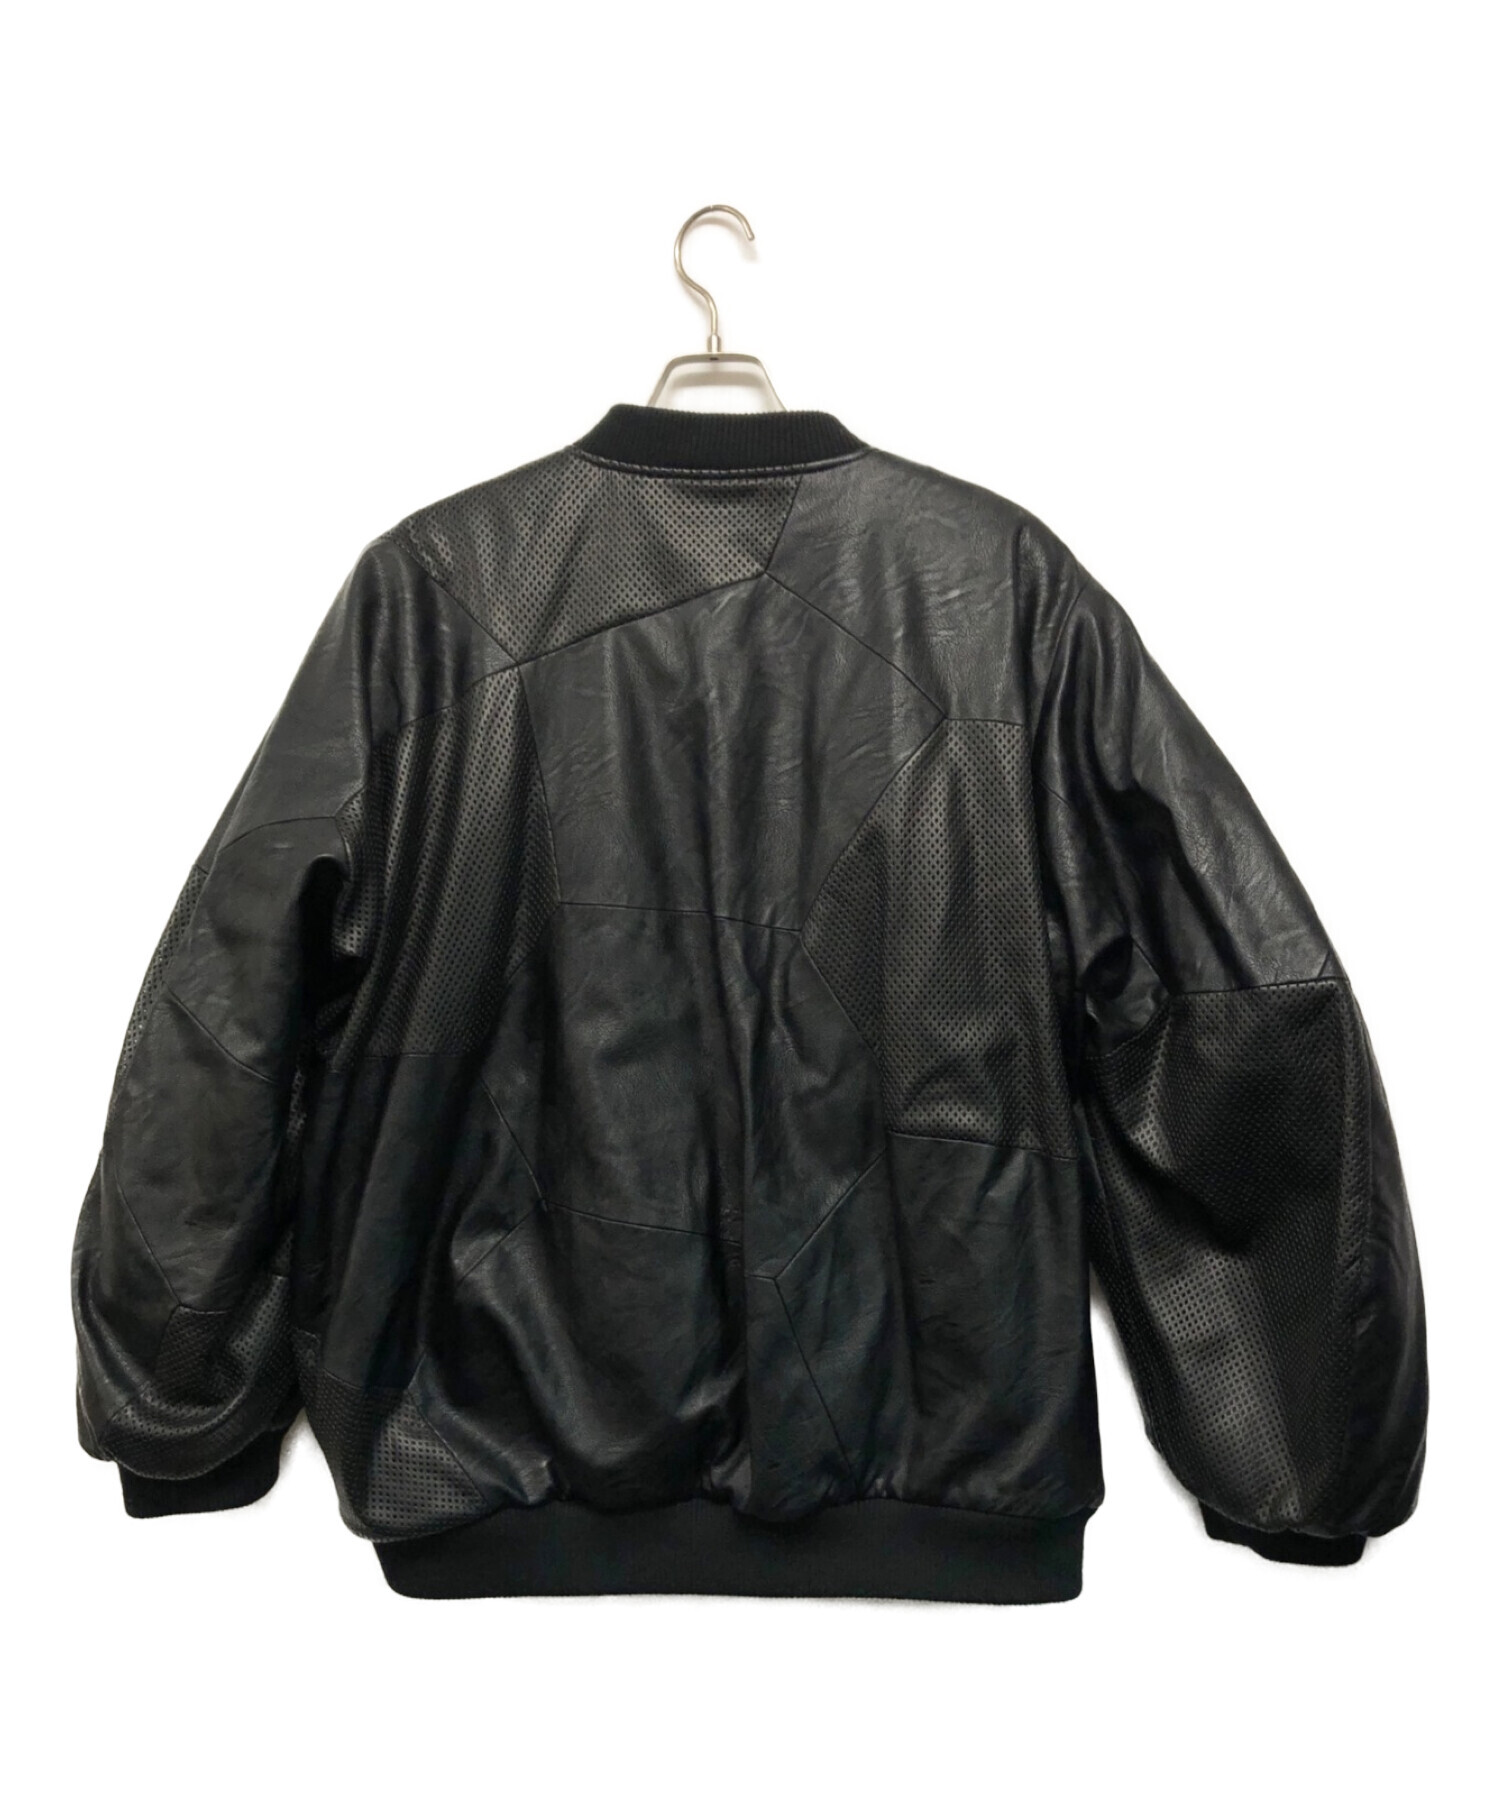 KOCHE (コシェ) 人工レザーパデッドボンバージャケット ブラック サイズ:M